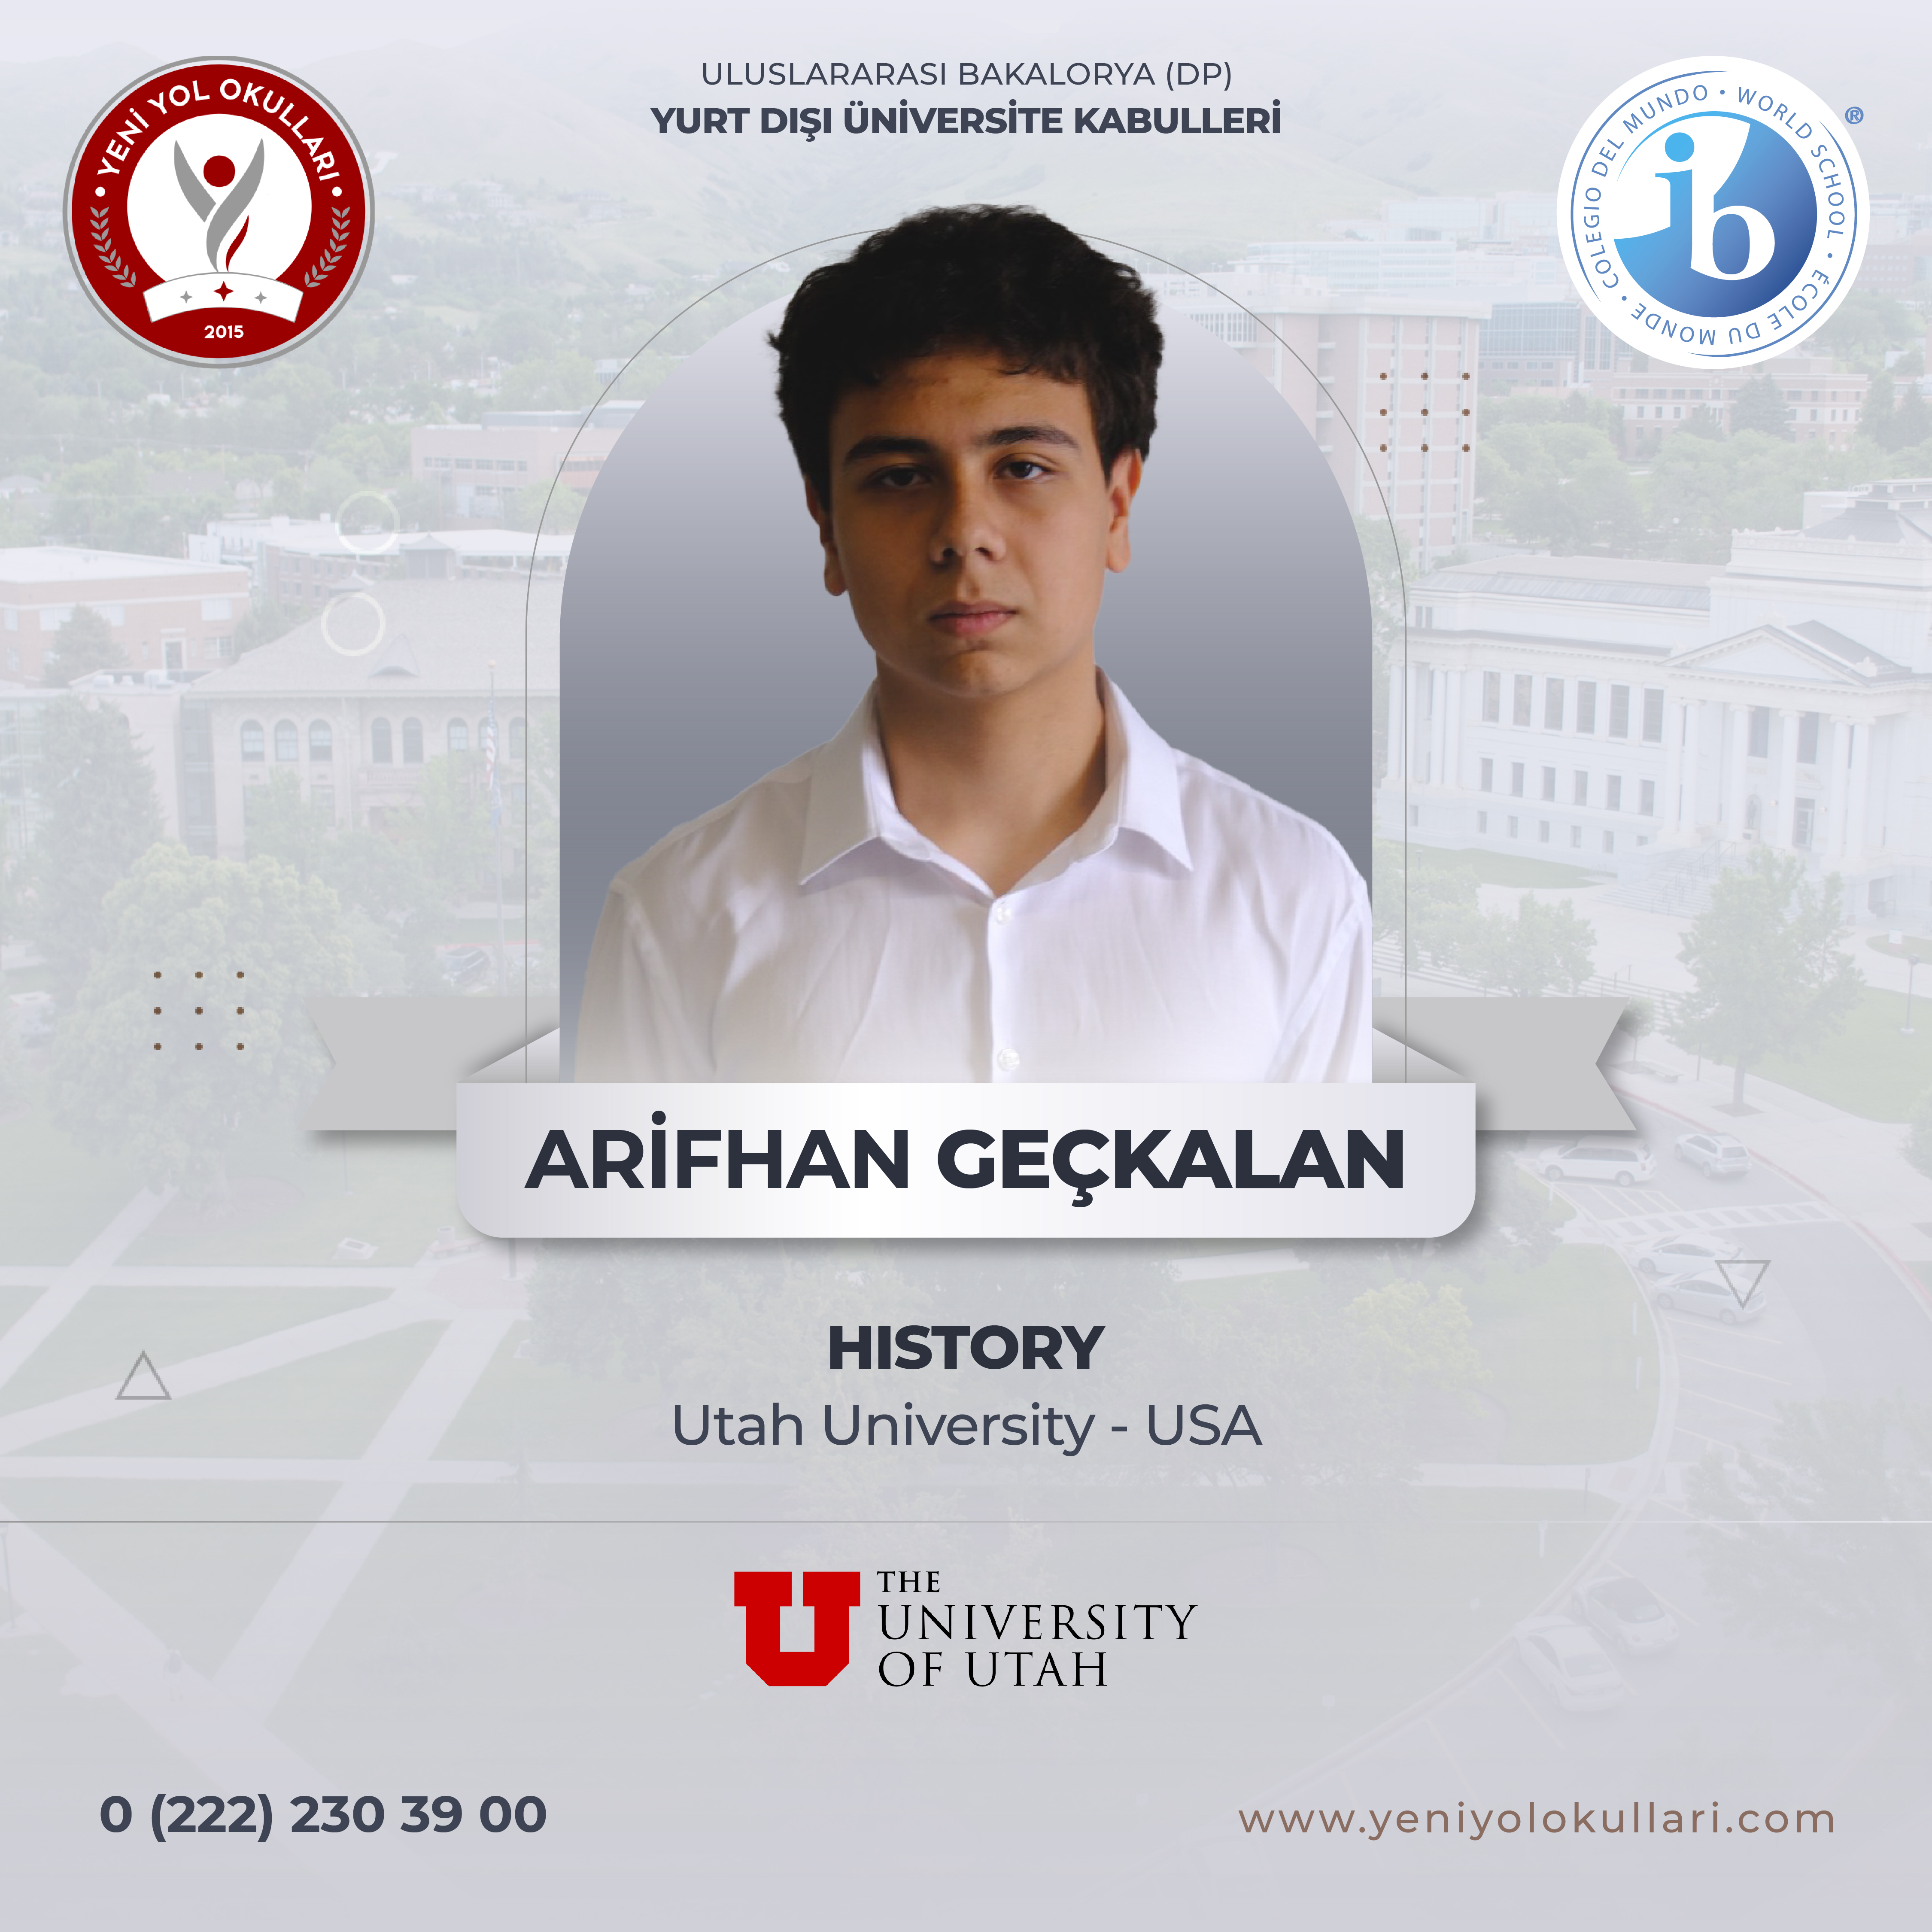 Yurt Dışı Üniversite Kabulleri - Arifhan Geçkalan